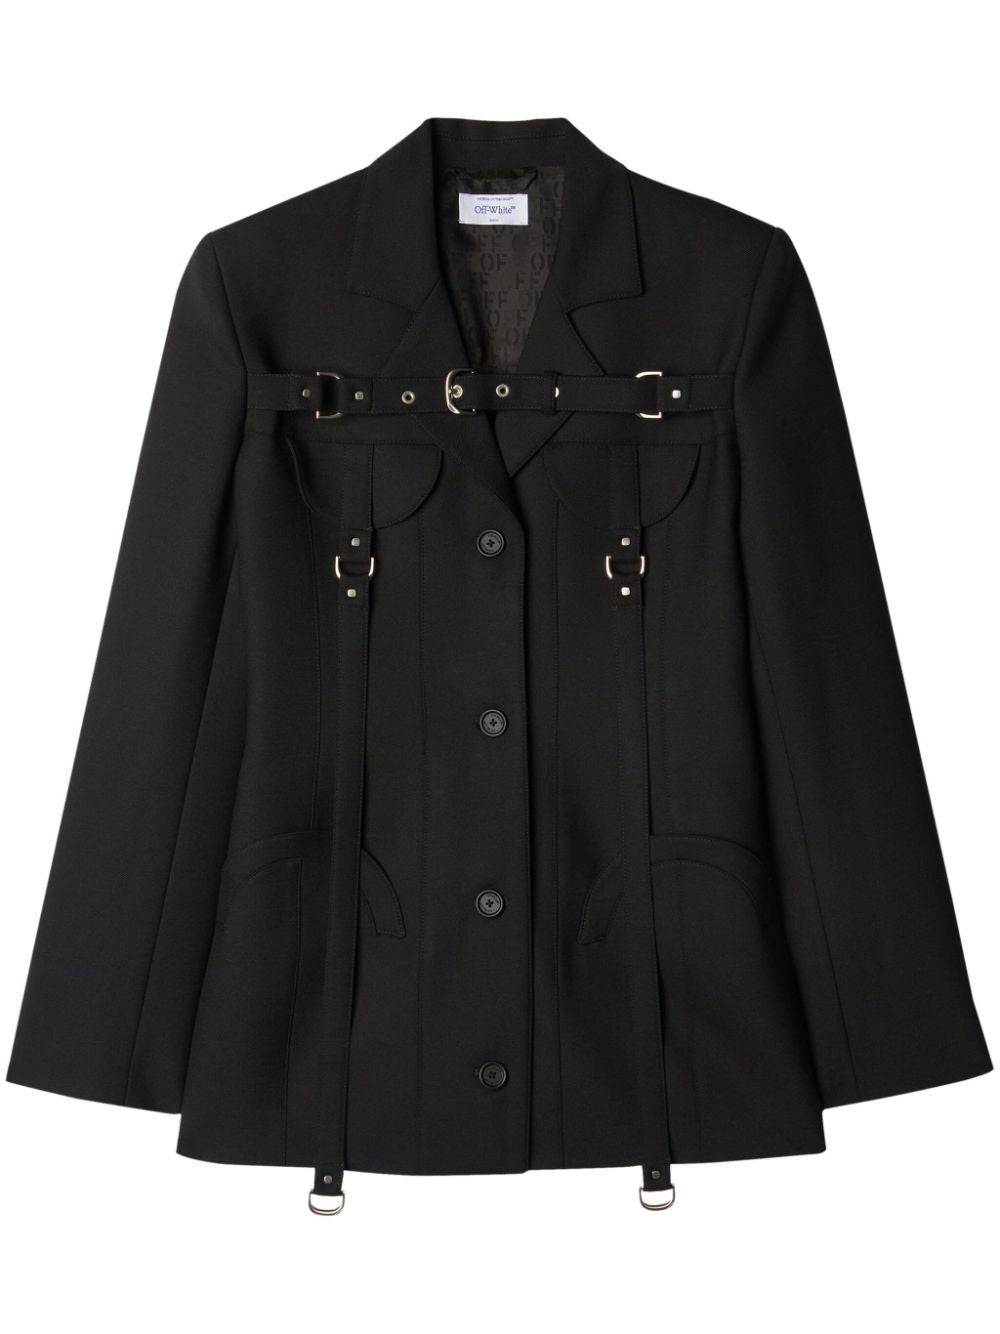 Áo vest lông mềm mại với cổ áo bằng vải len đen và khóa trang trí cho phụ nữ